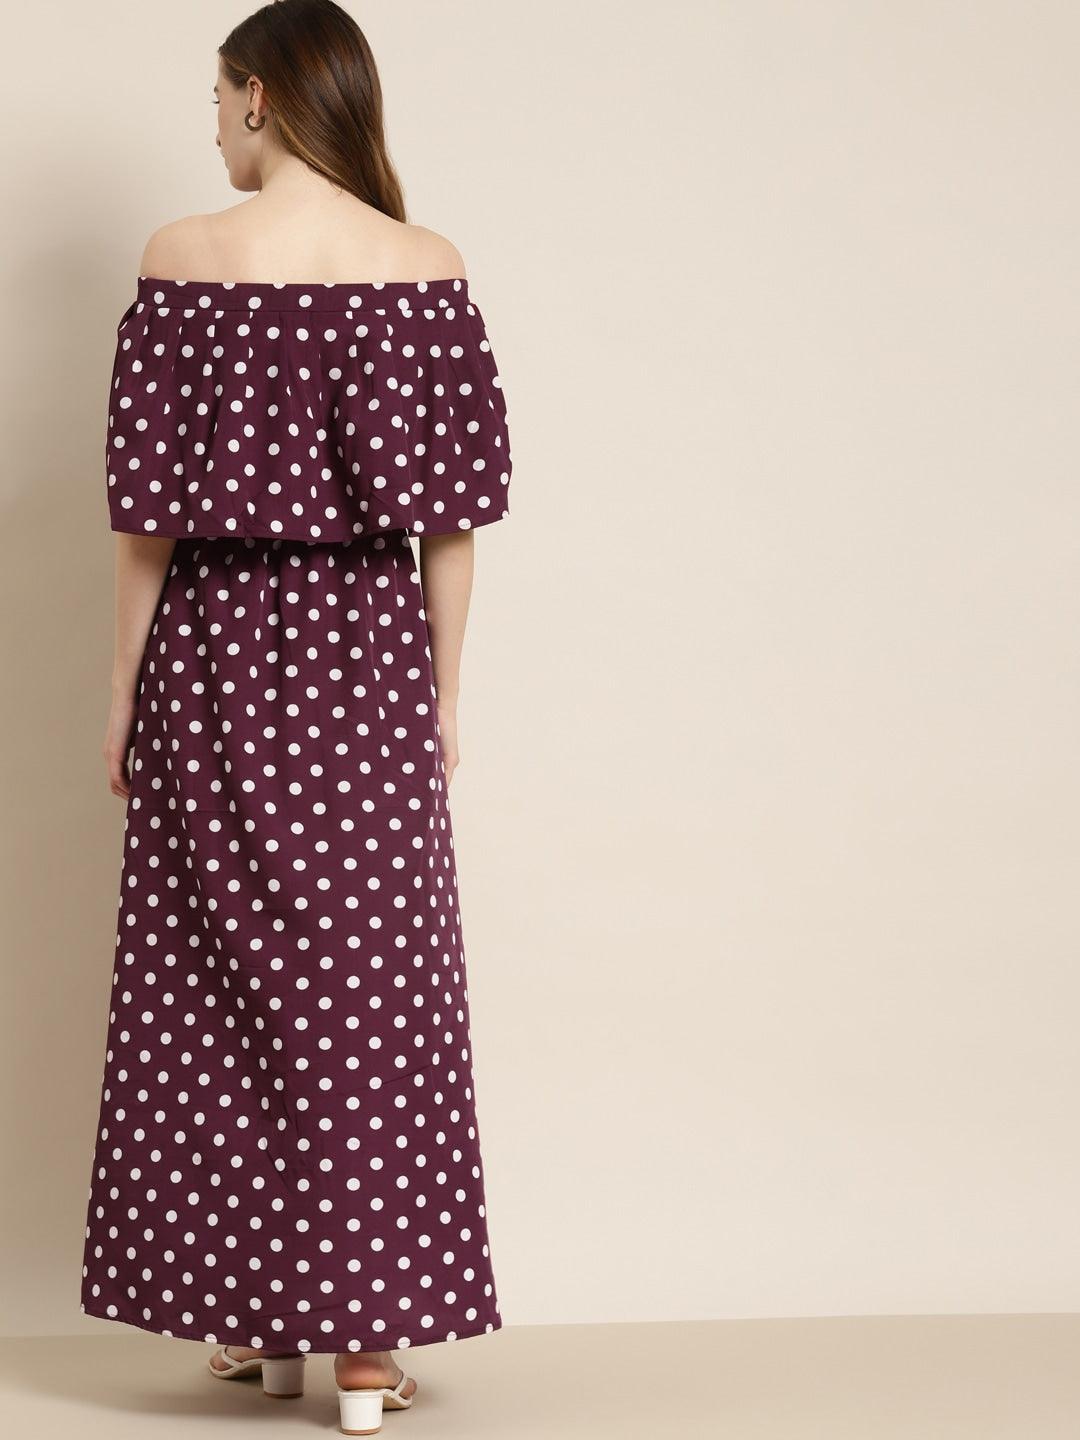 Qurvii Burgundy & White Polka Dot Print Off-Shoulder Maxi Dress - Qurvii India